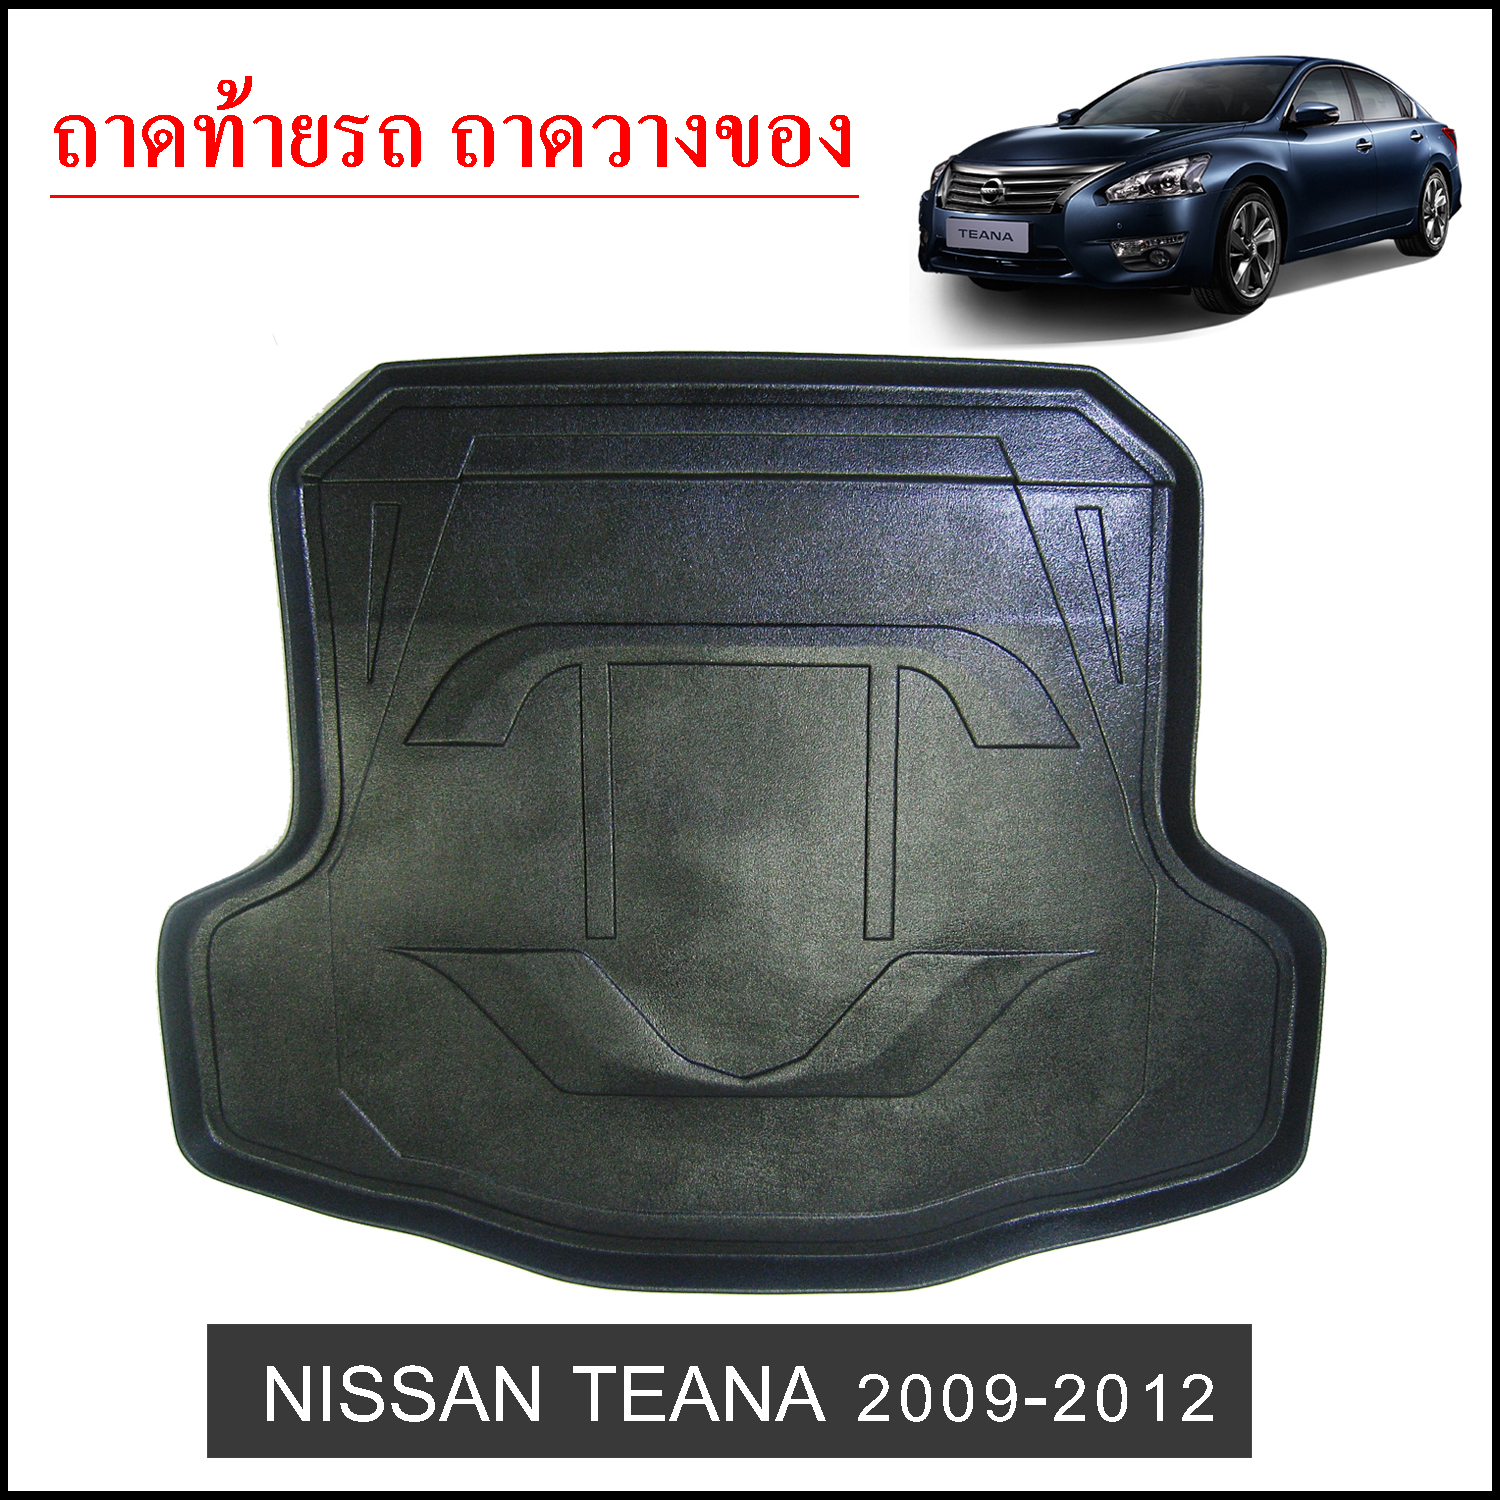 Nissan Teana 2009-2012